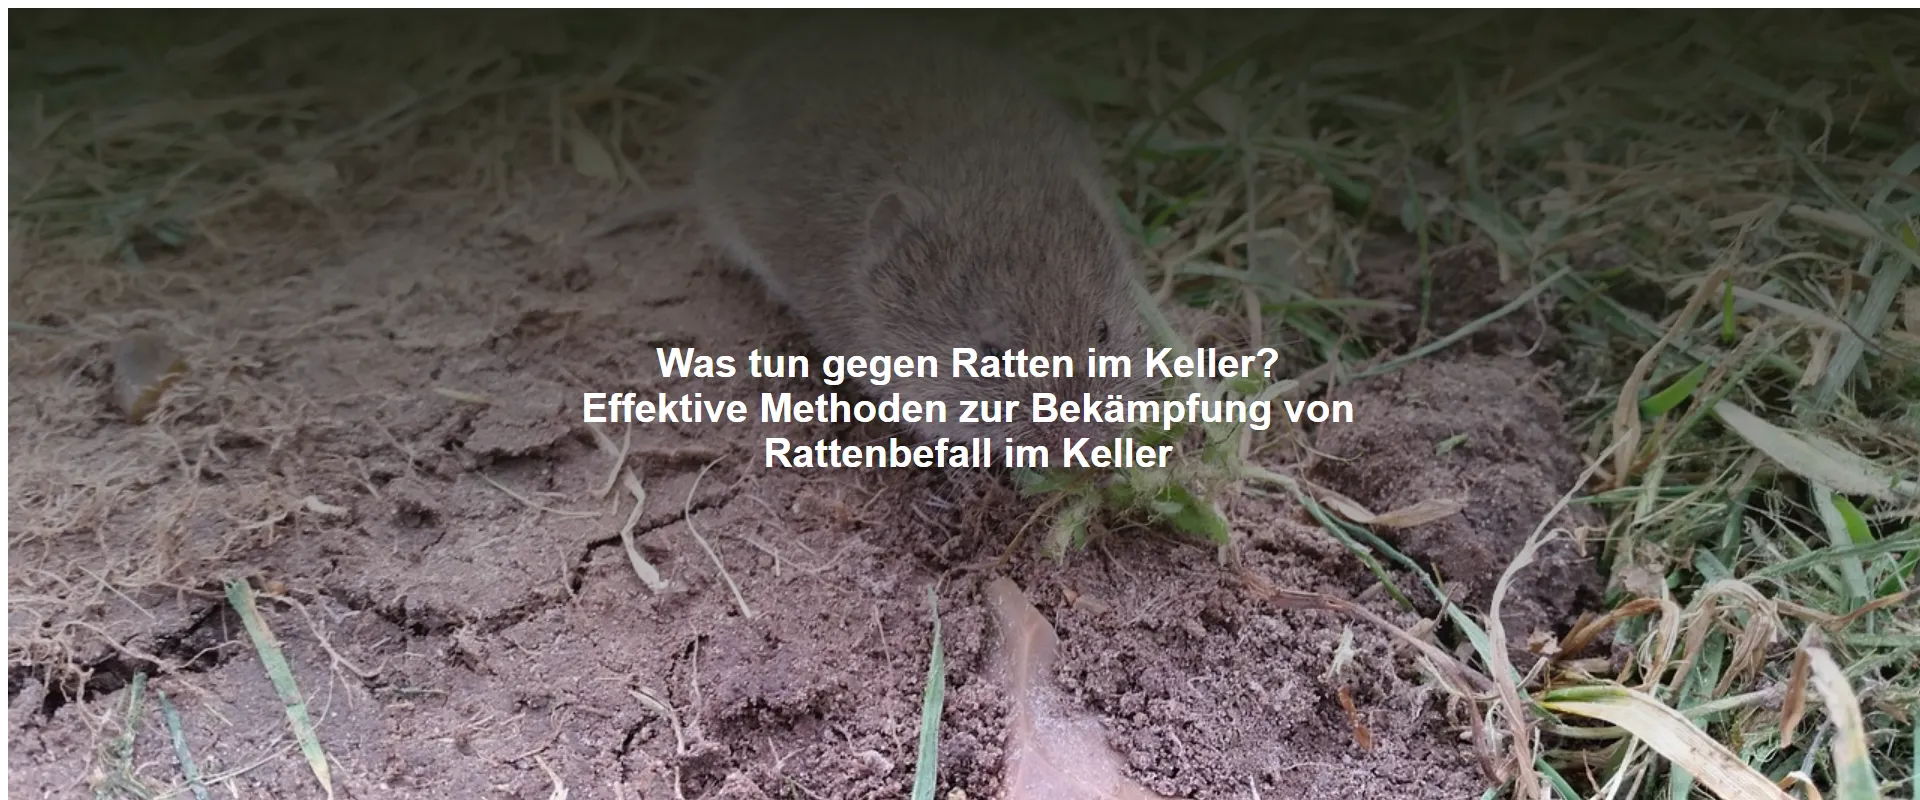 Was tun gegen Ratten im Keller? Effektive Methoden zur Bekämpfung von Rattenbefall im Keller